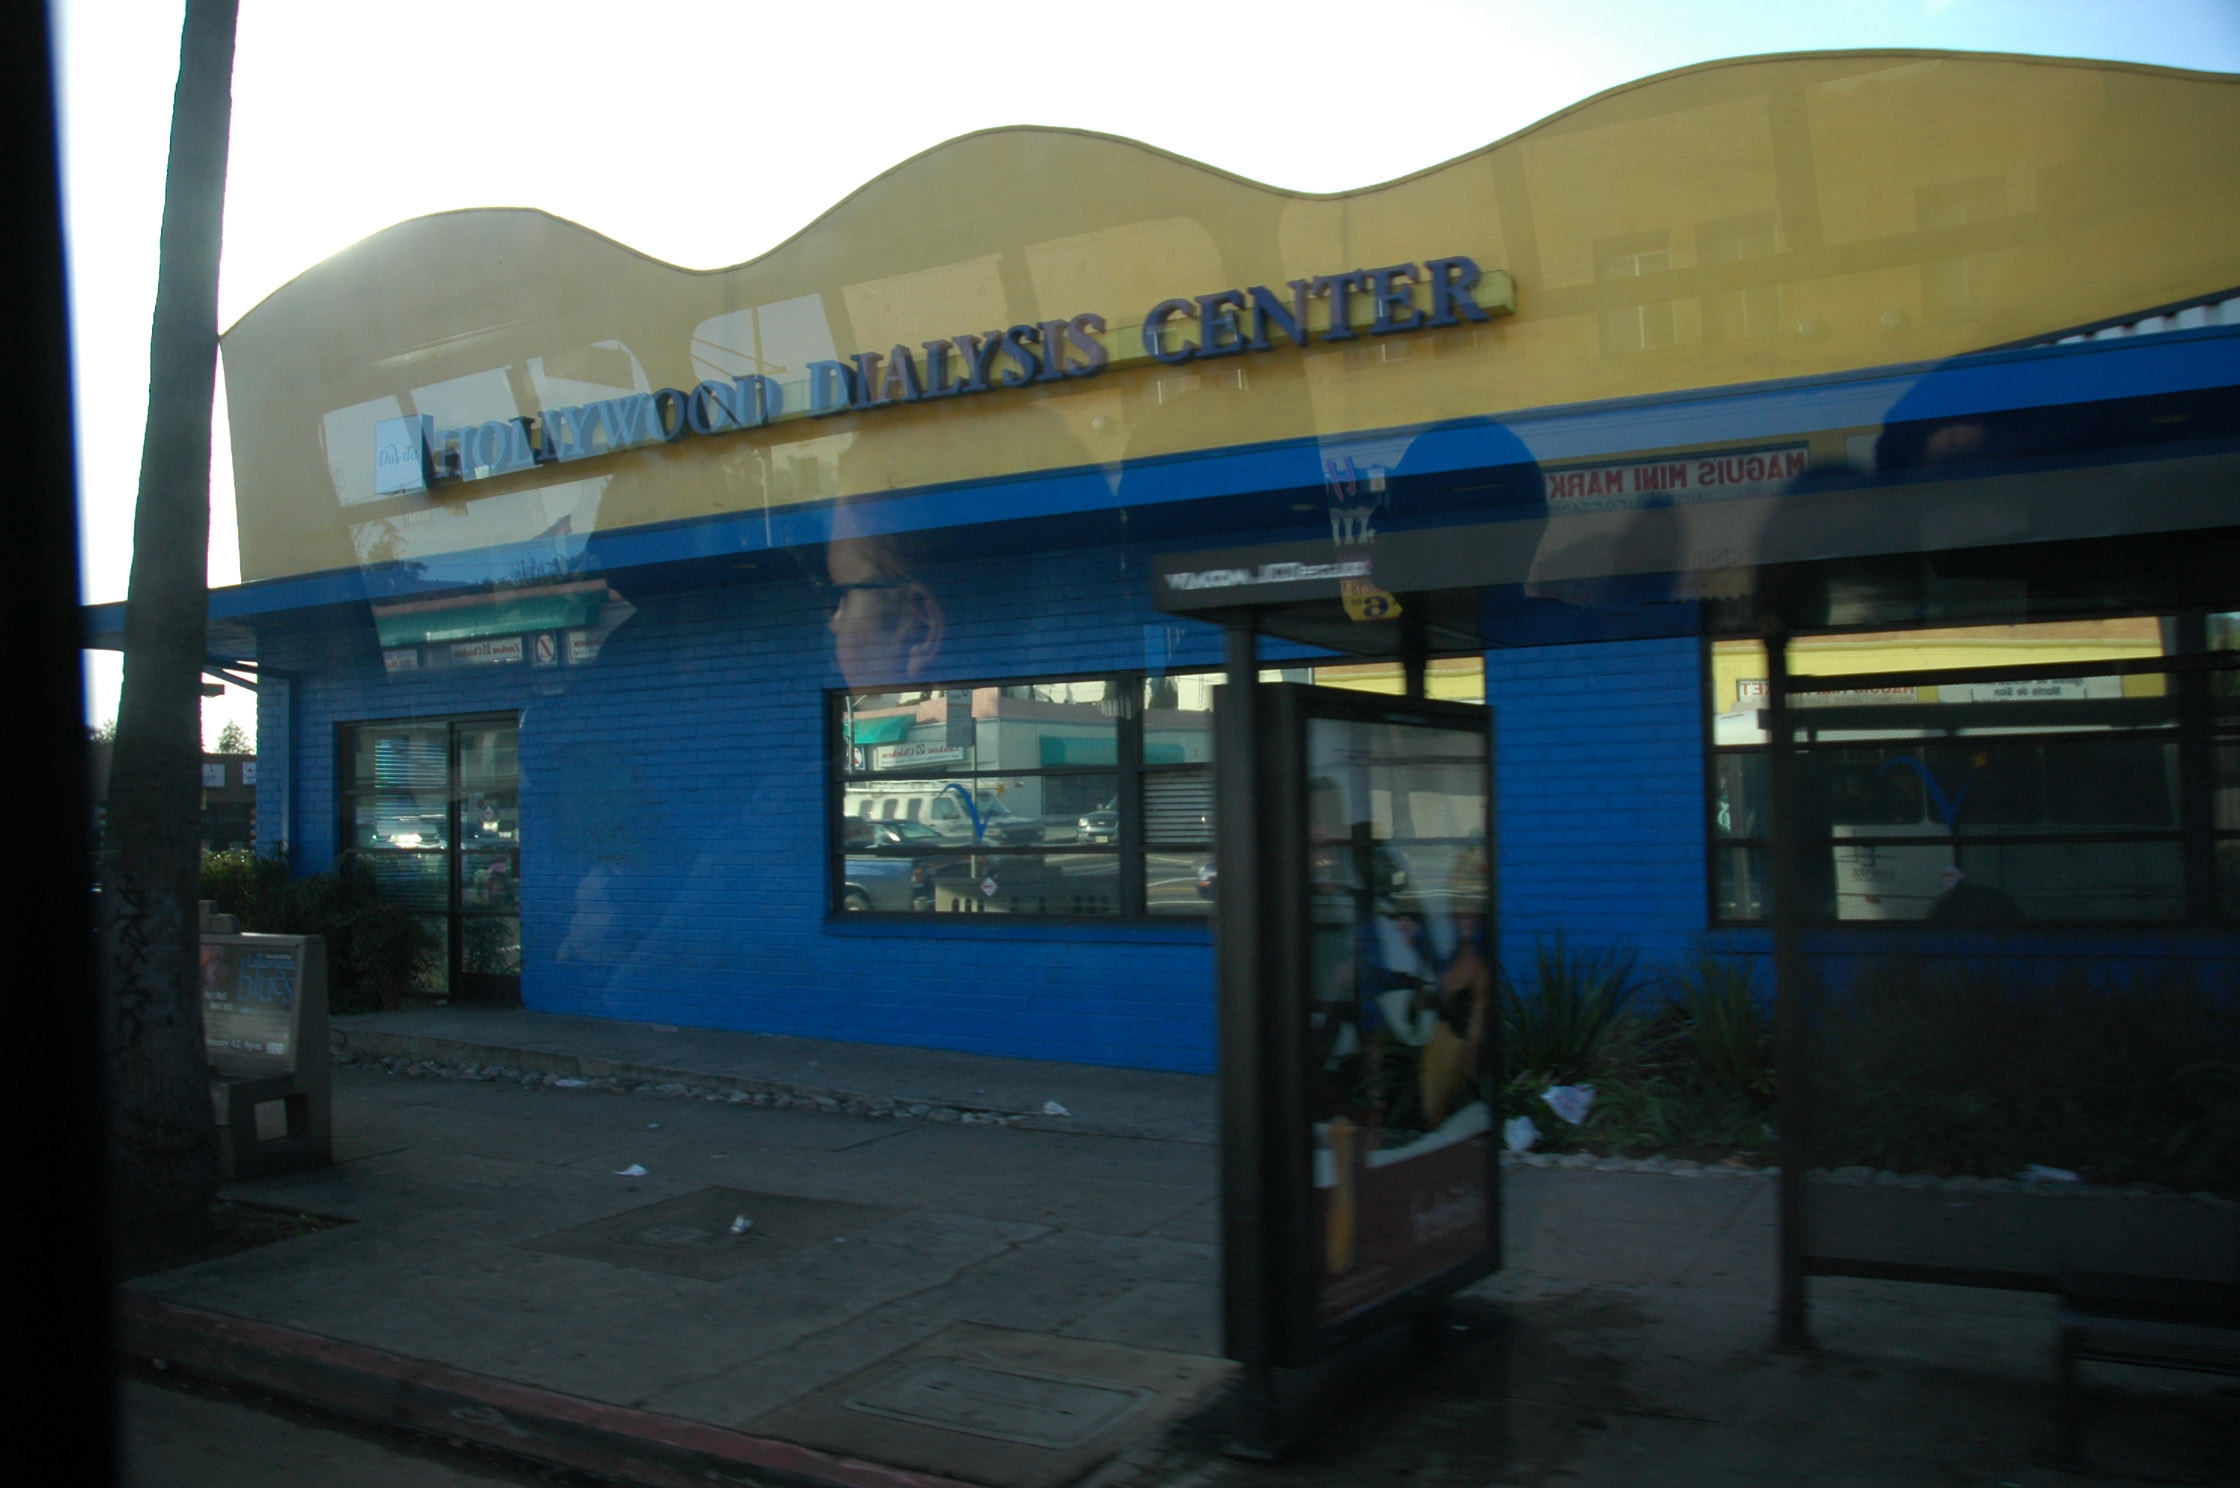 Sunset Boulevard, Hollywood Dialysis Center